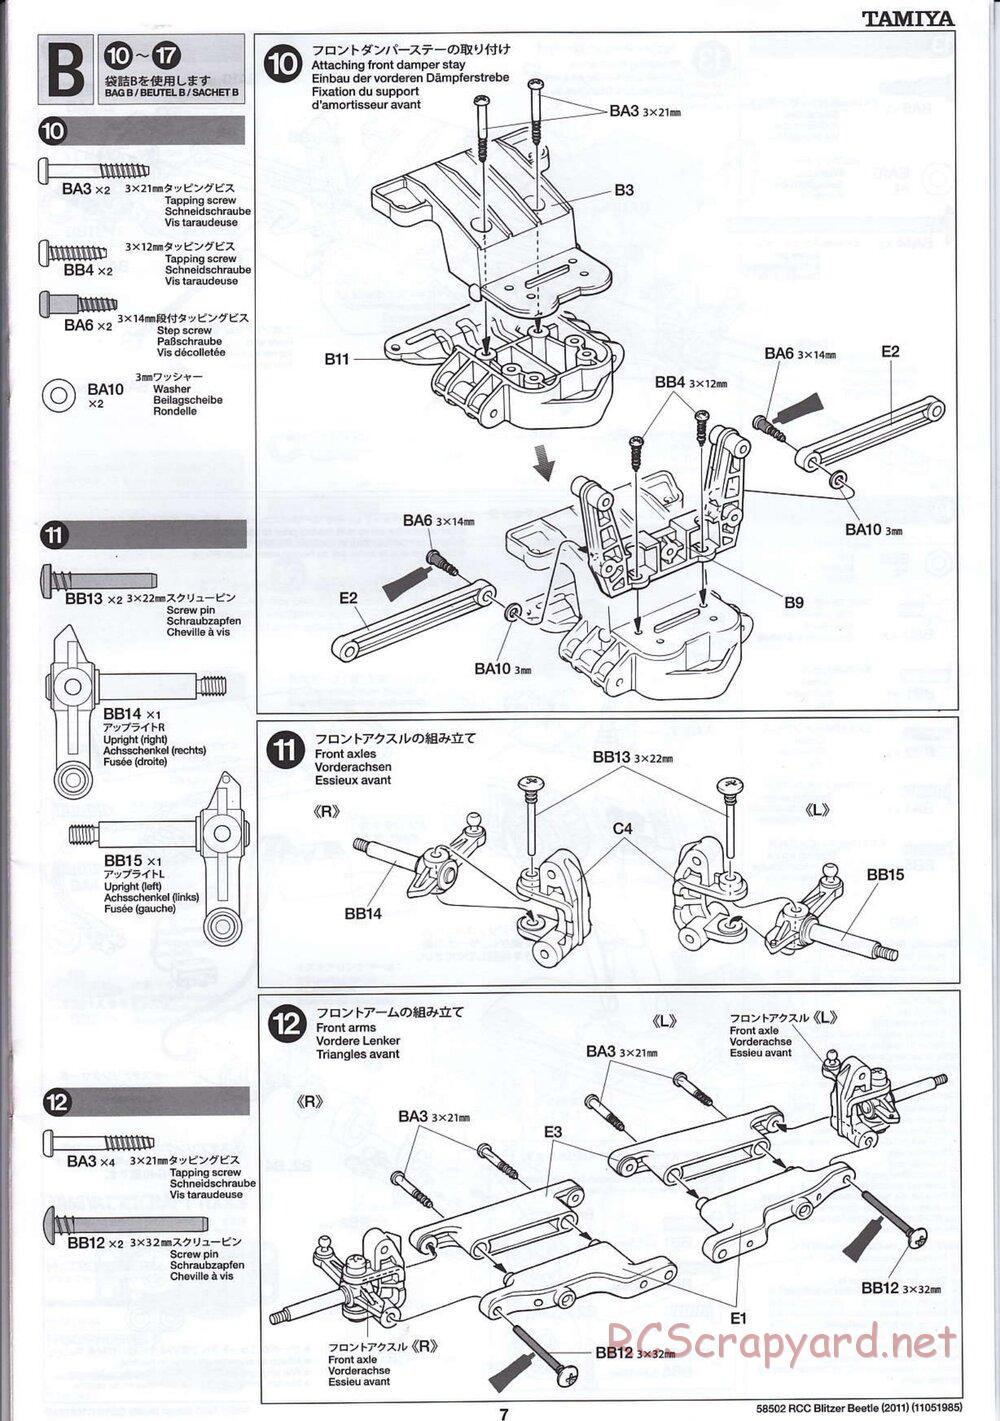 Tamiya - Blitzer Beetle 2011 - FAL Chassis - Manual - Page 7